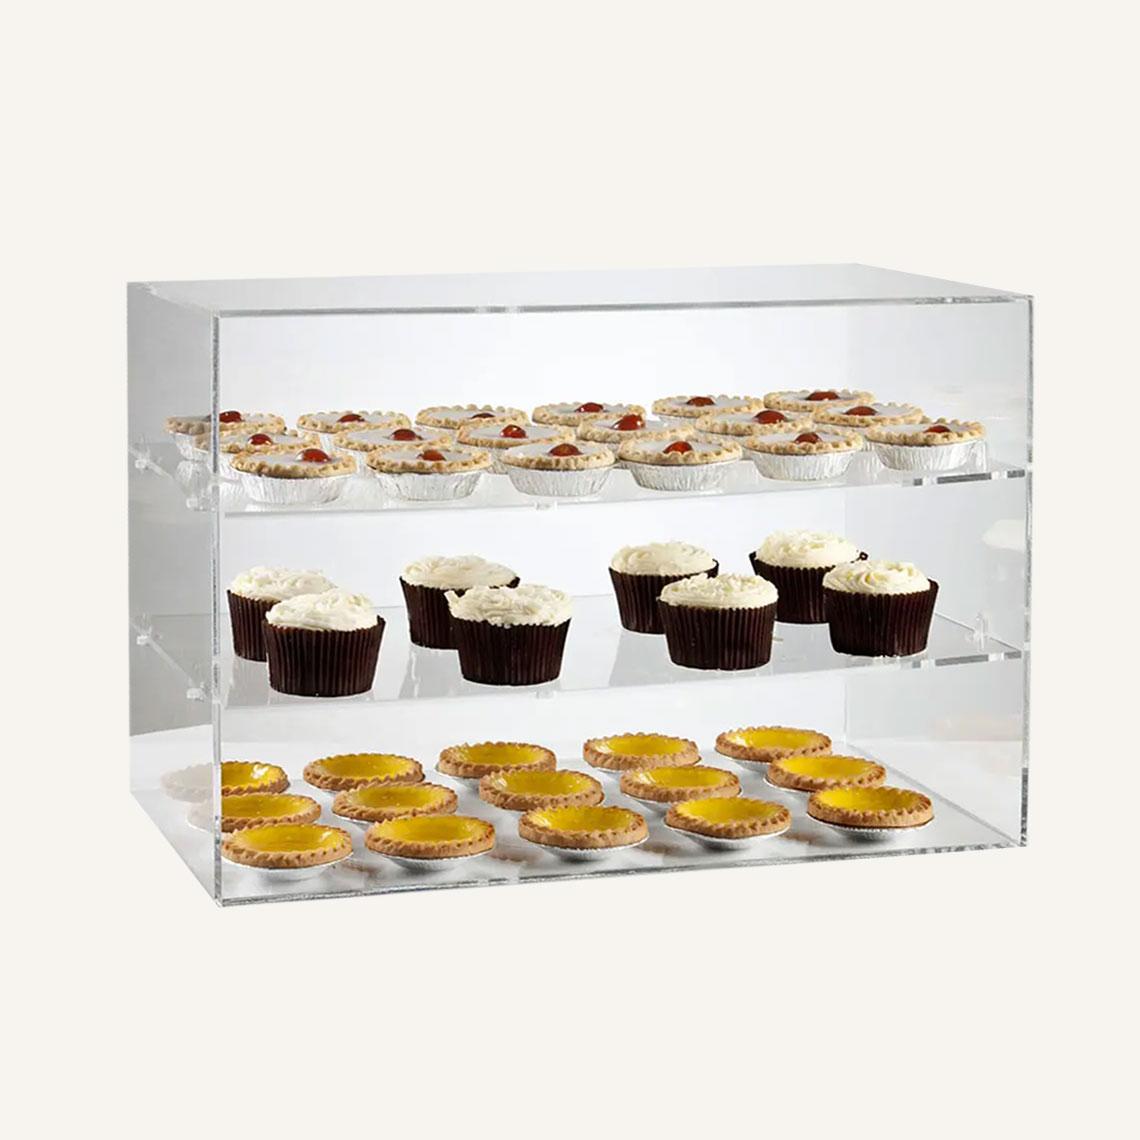 Cake Display Counter, Cake Showcase, Cake Display Refrigerator